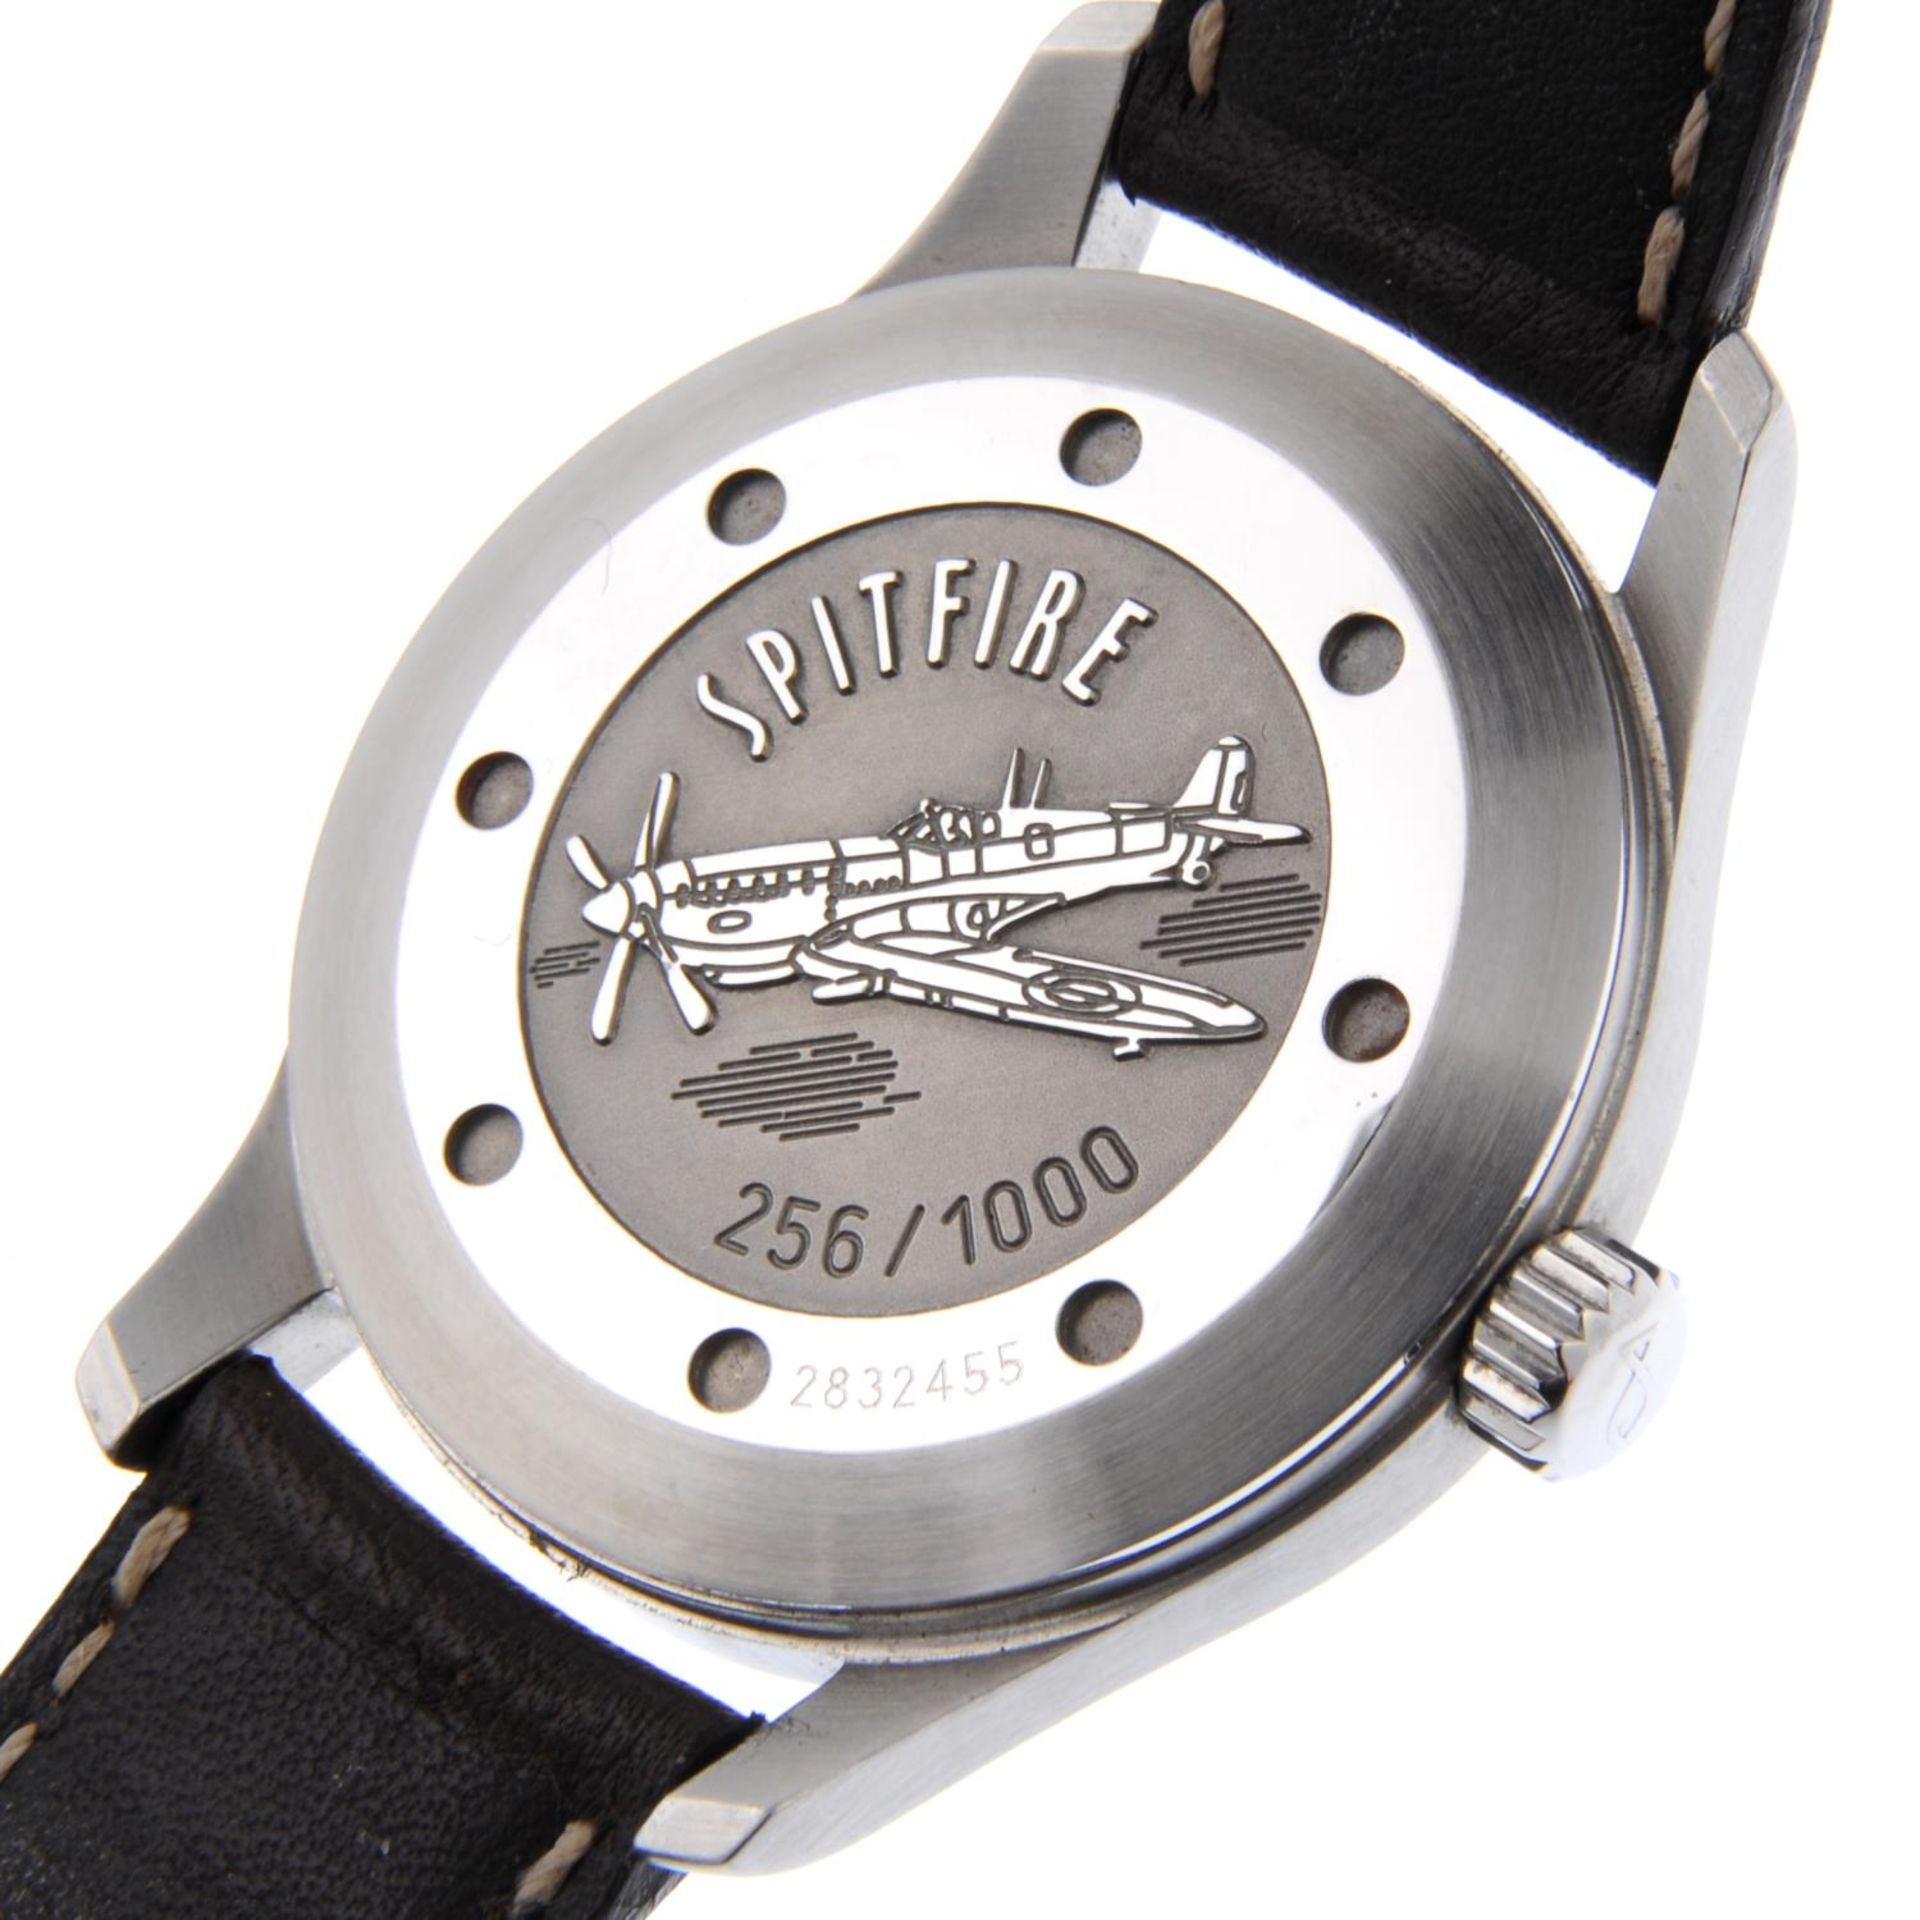 IWC - a Limited Edition gentleman's Mark XV Spitfire wristwatch. - Bild 2 aus 5